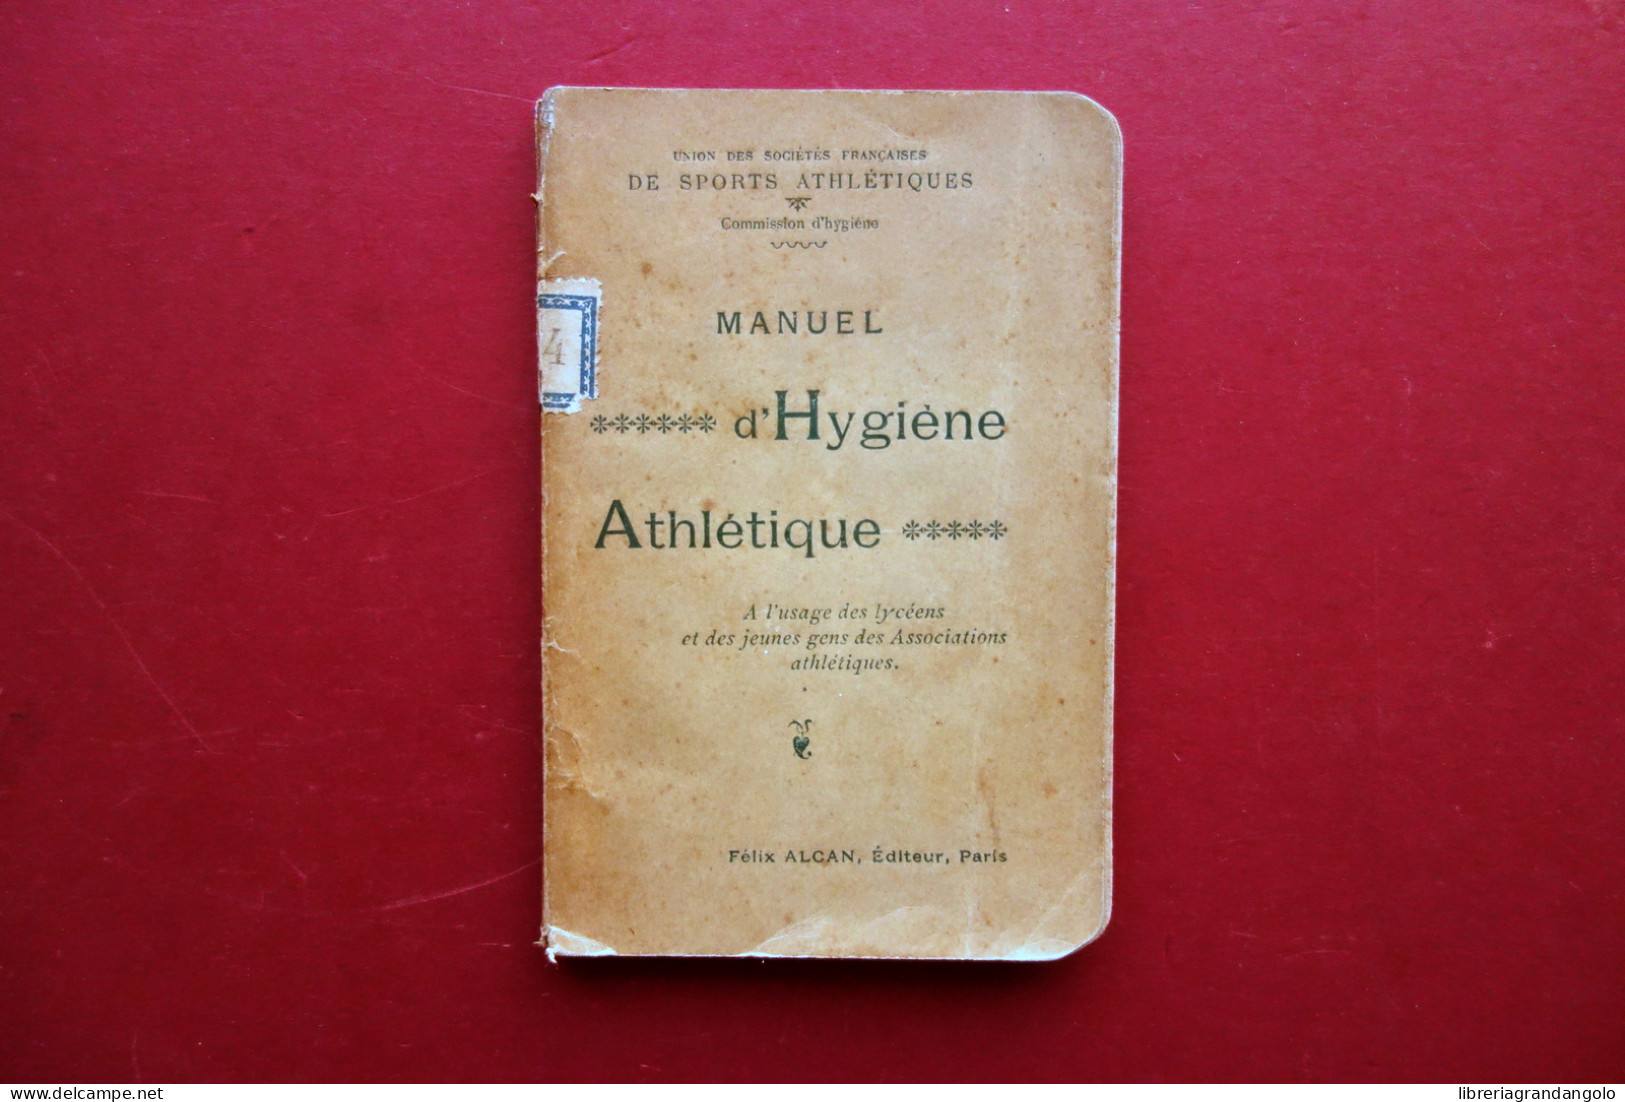 Manuel D'Hygiene Athletique A L'Usage Des Lyceens Alcan Paris 1895 Sport - Unclassified